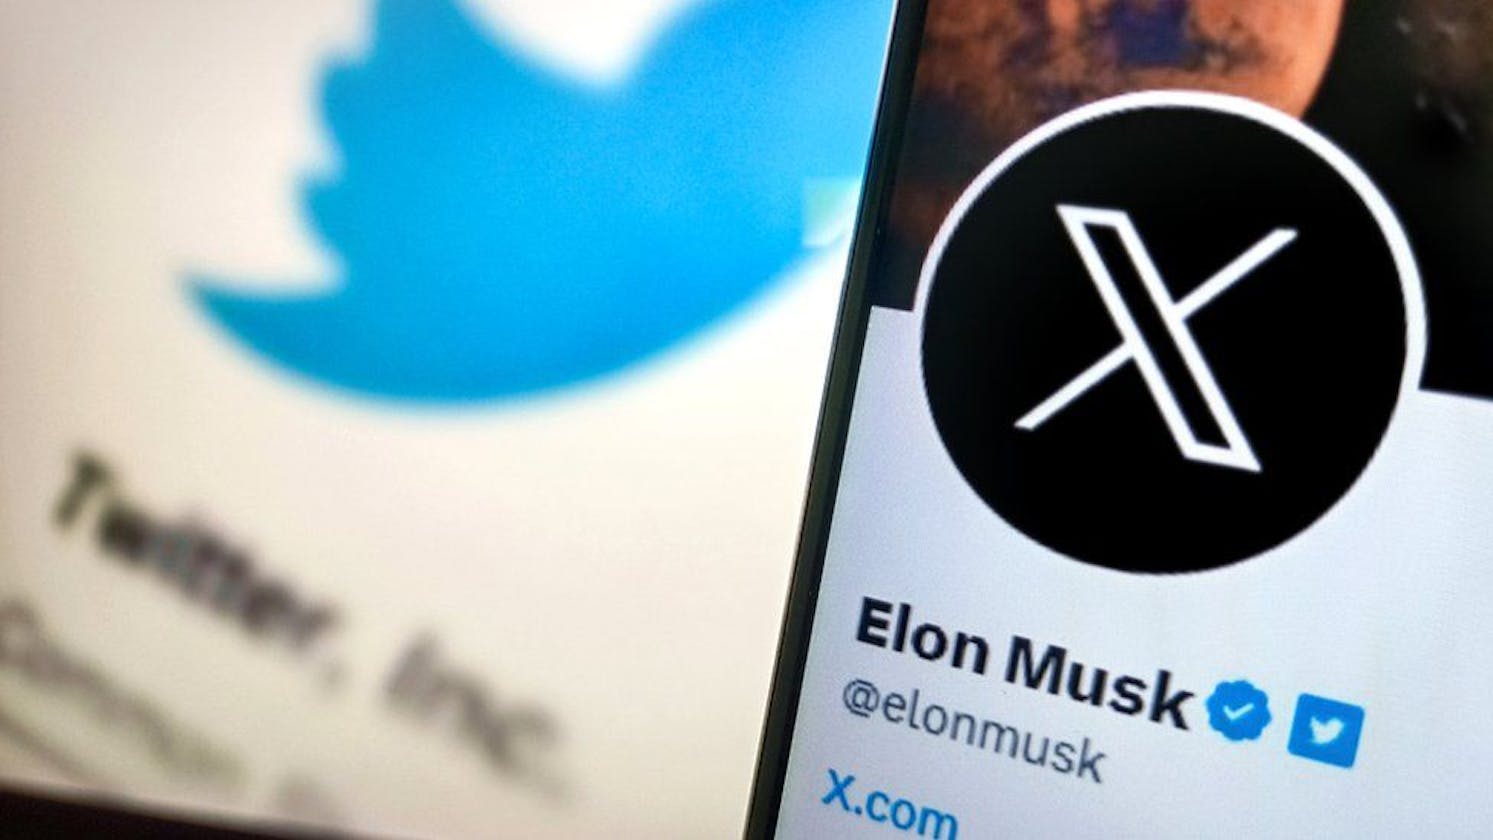 Elon Musk: Twitter unveils X logo to replace blue bird